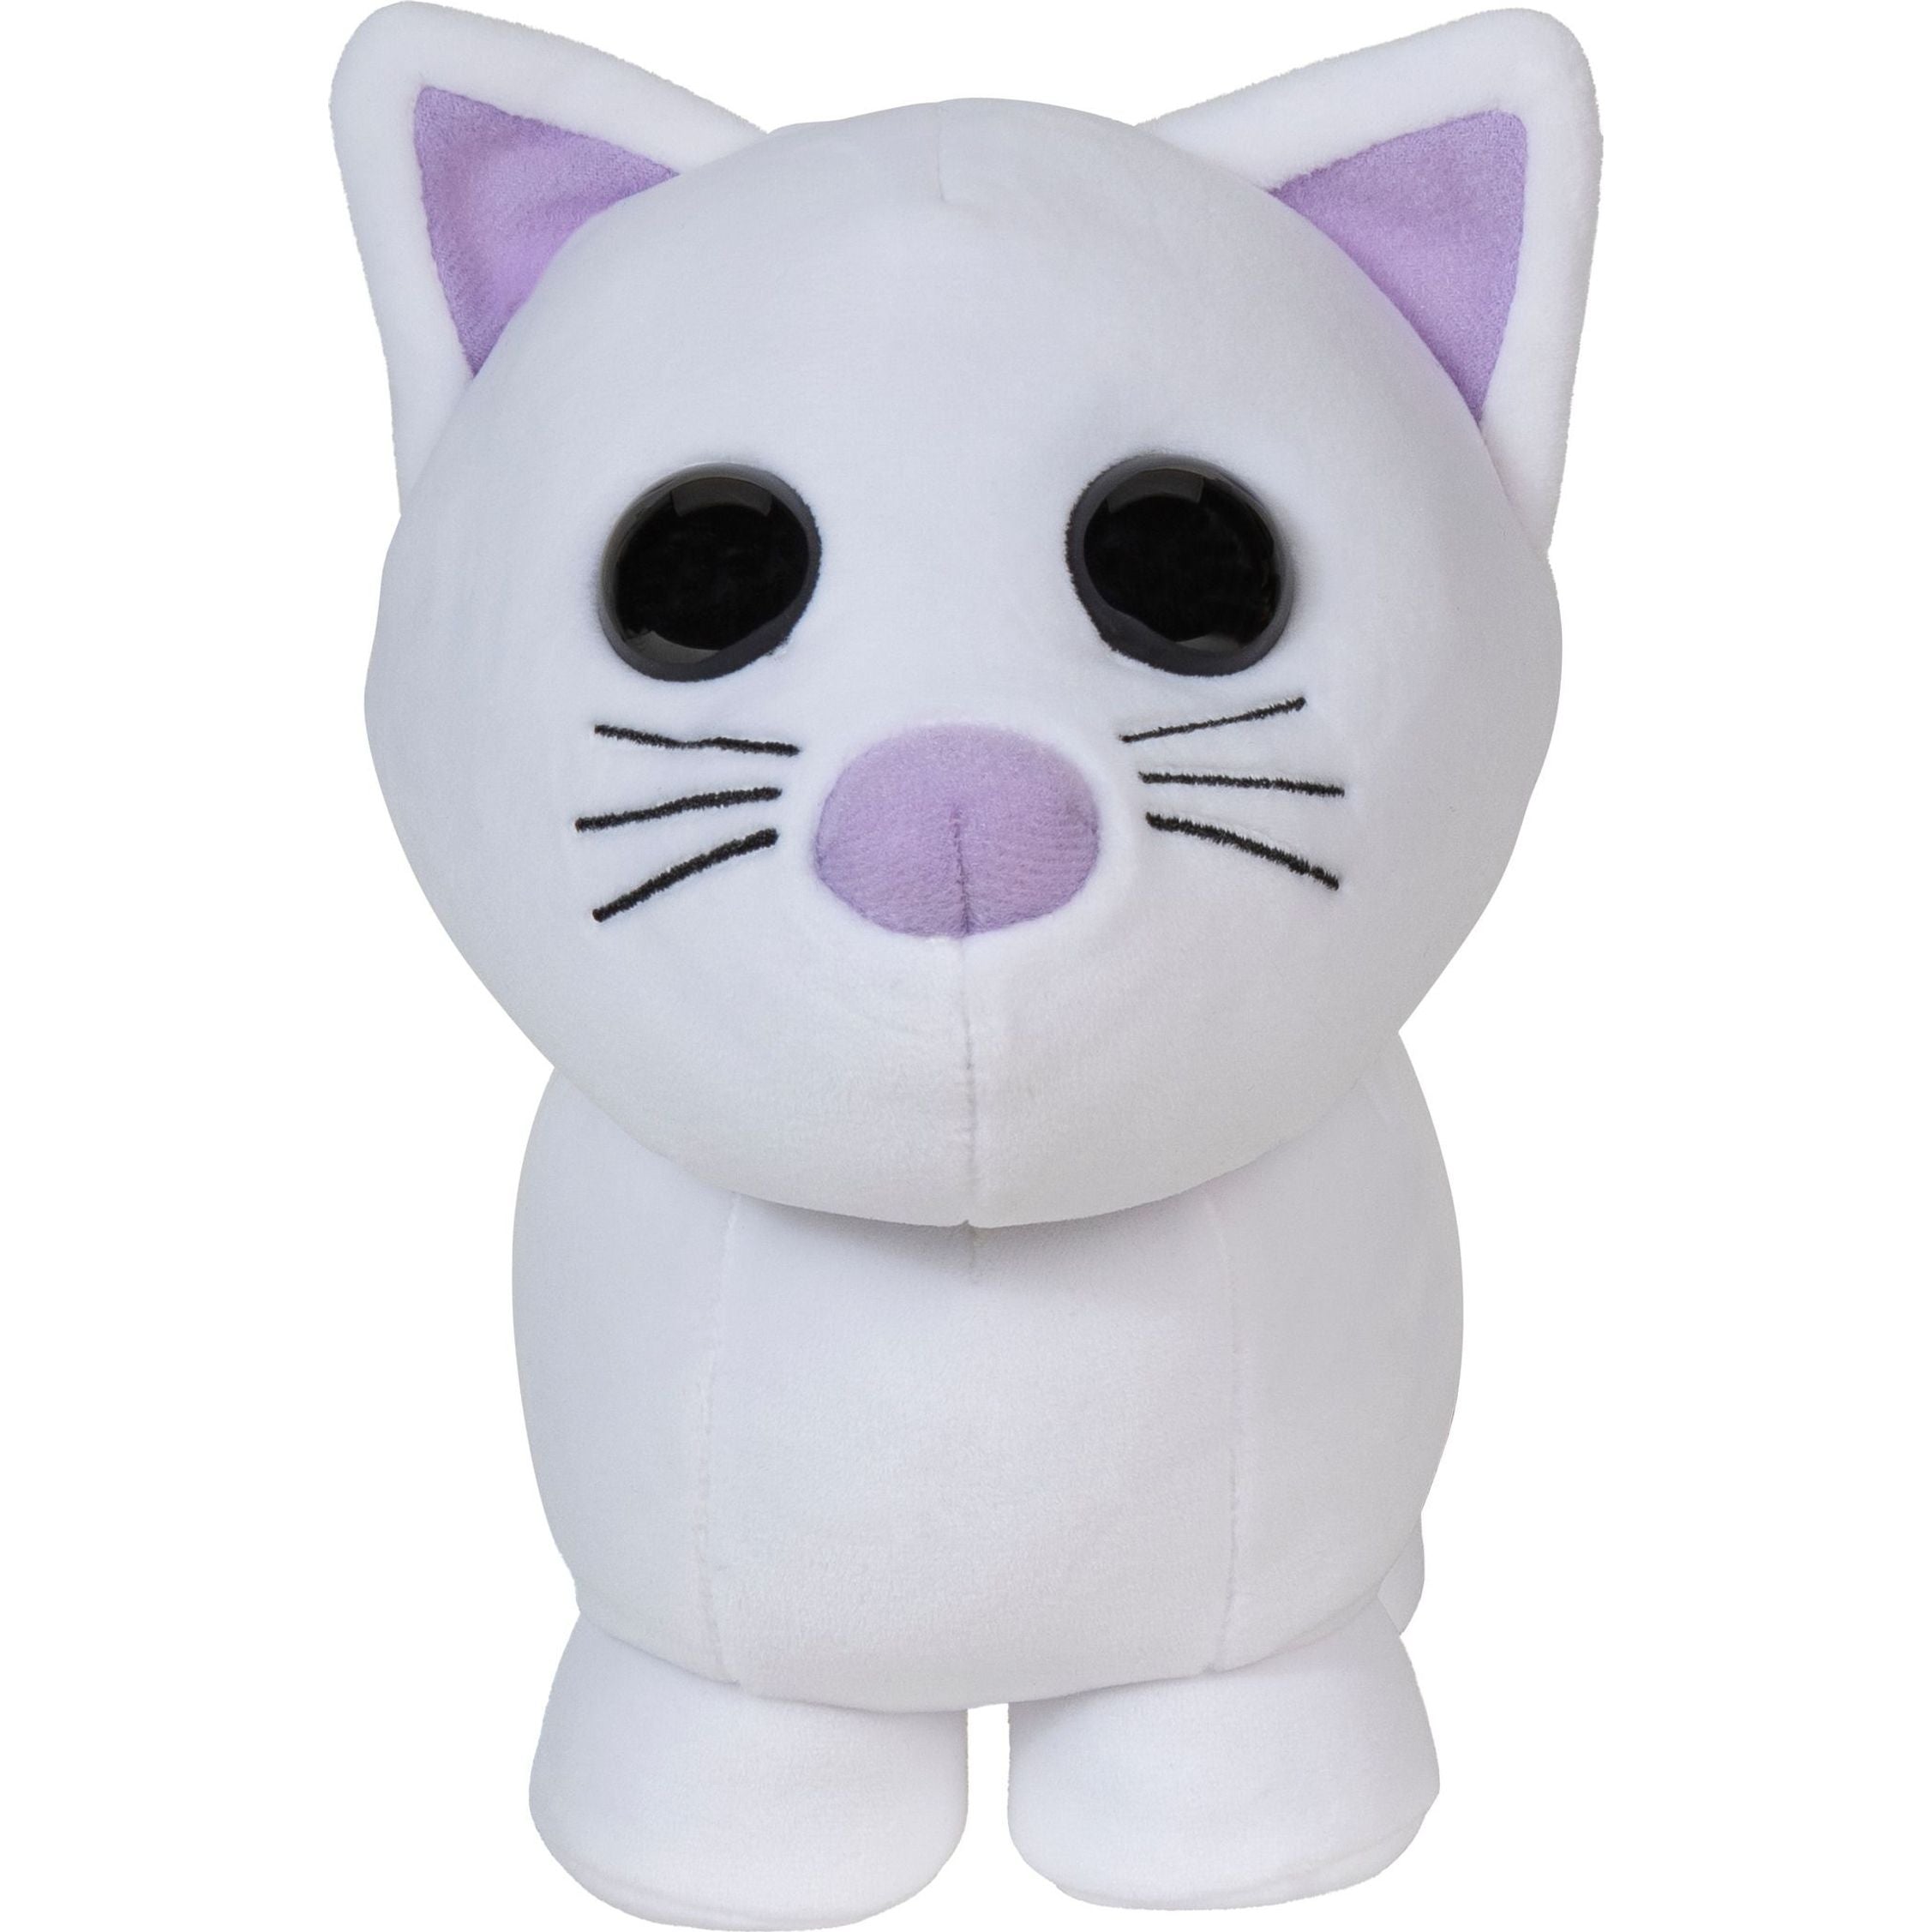 Adopt Me 8" Snow Cat Collector Plush Adopt Me